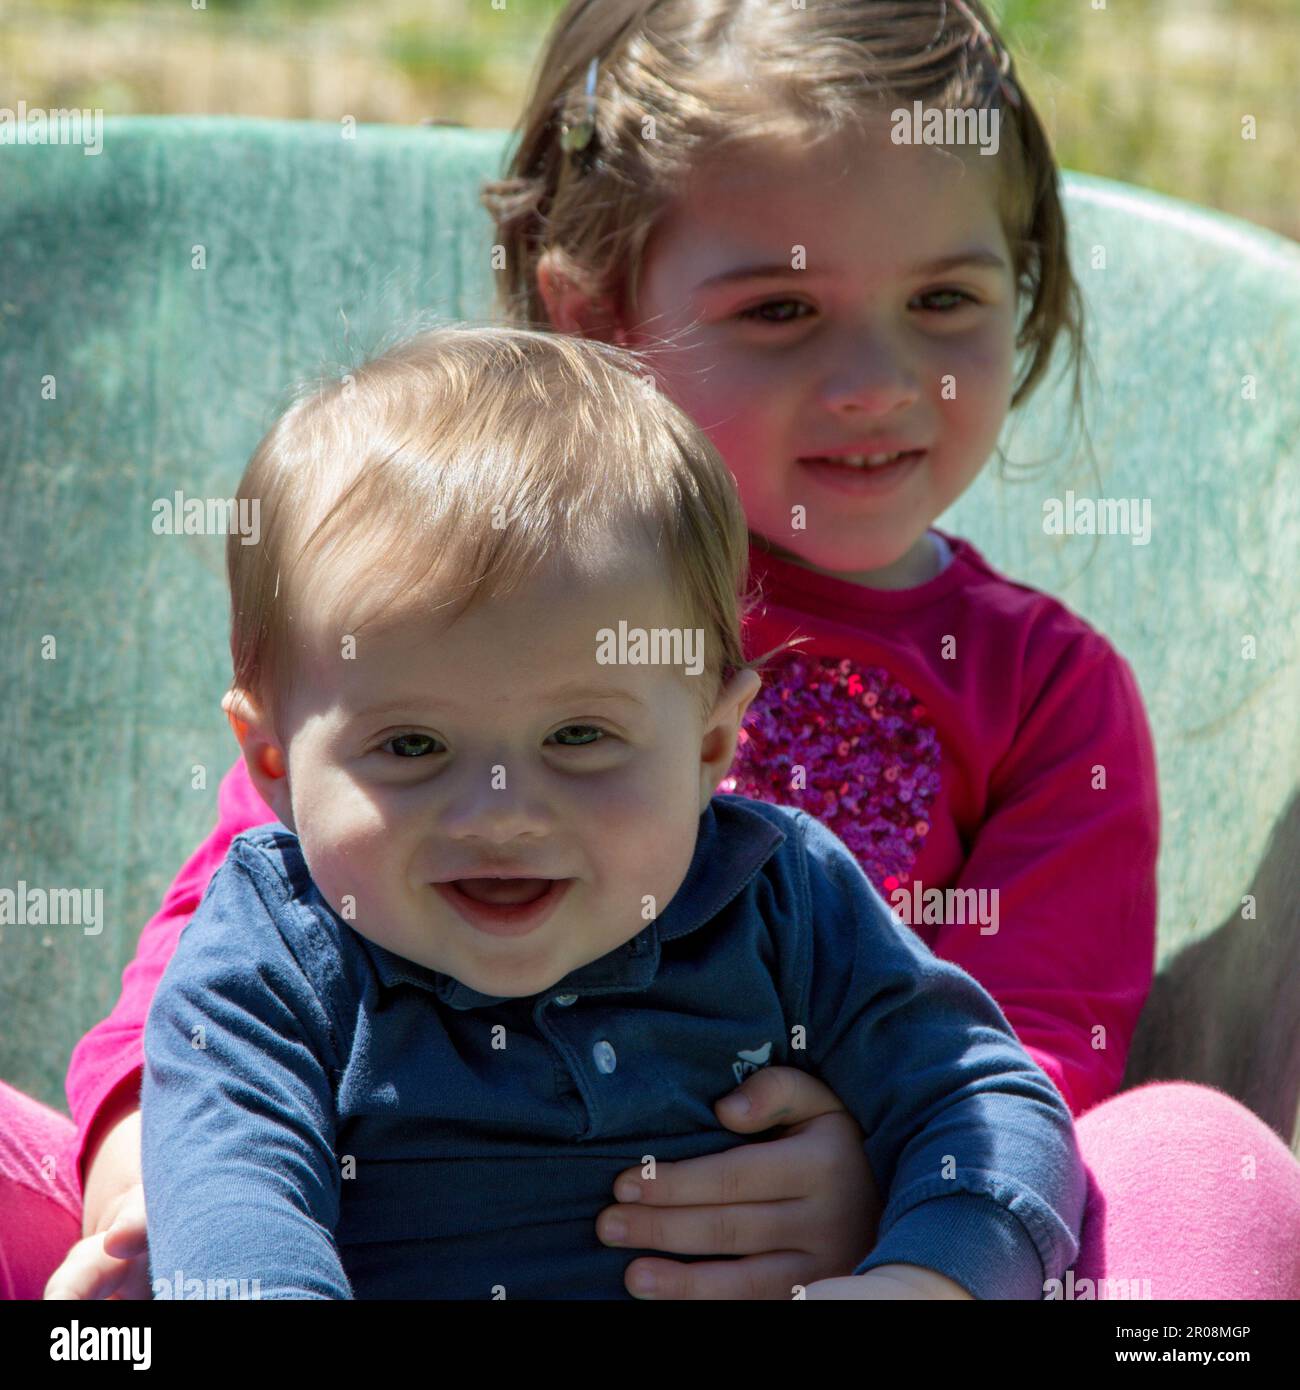 Image de deux adorables enfants souriants se tenant à l'intérieur d'une brouette. Amour fraternel comme ils jouent dans le jardin Banque D'Images